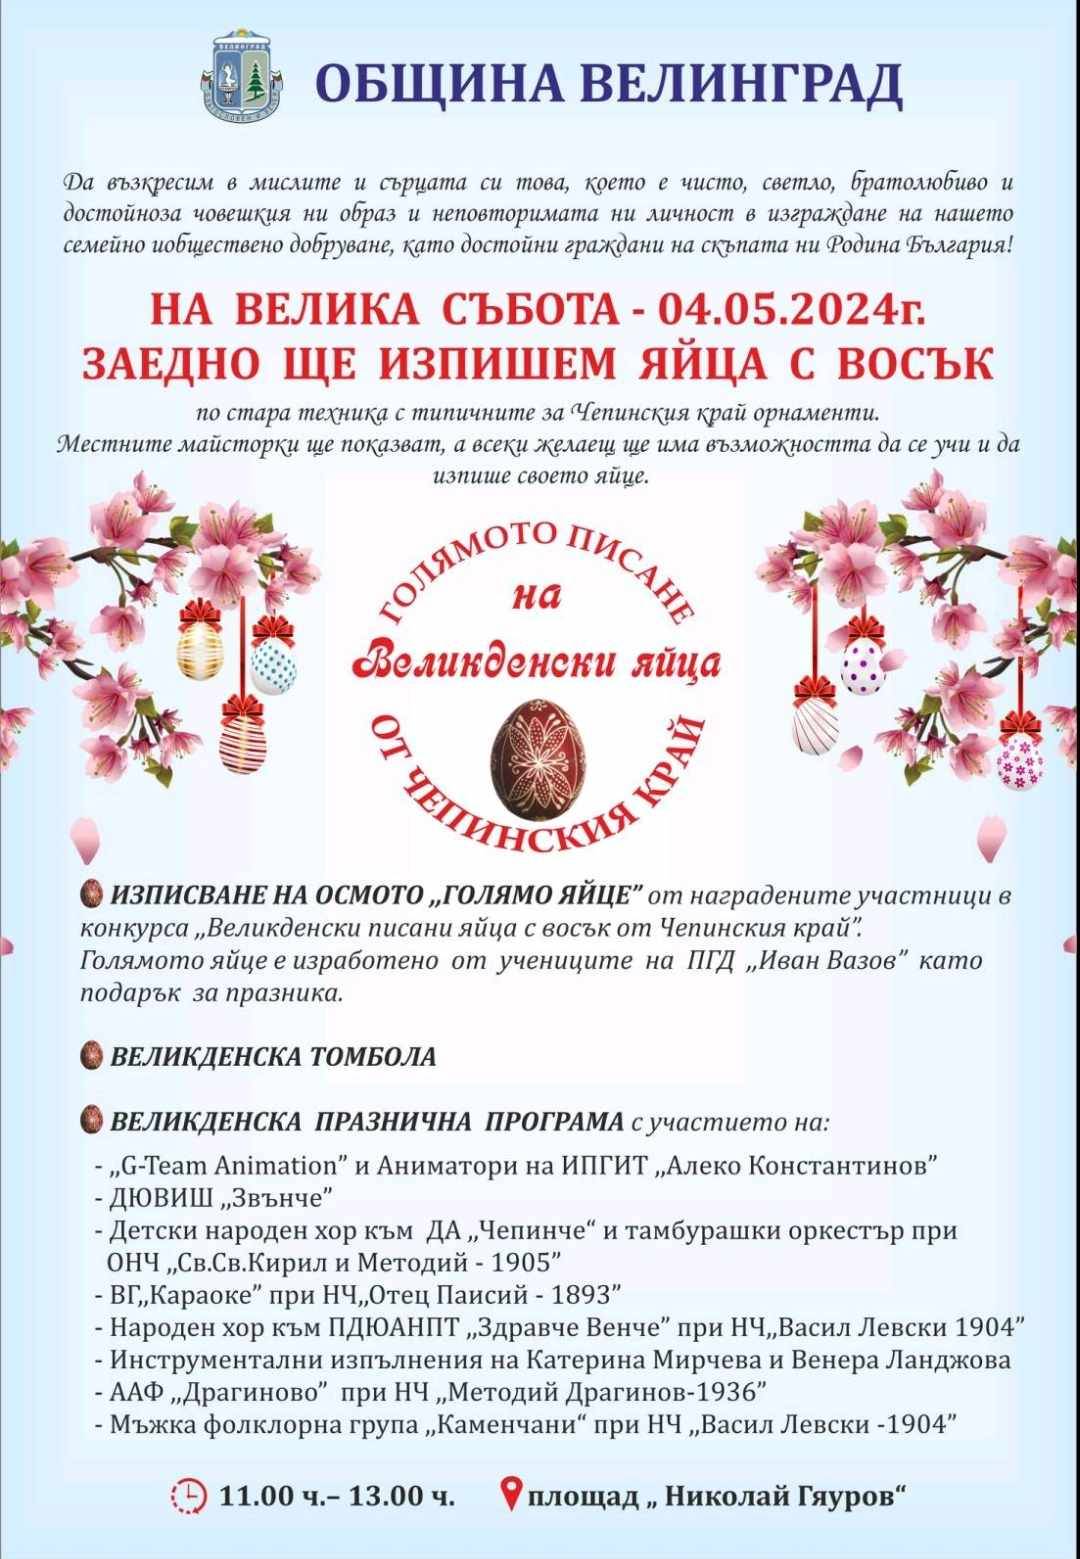  На 4 май за осми път ще се организира Голямото писане на великденски яйца от Чепинския край 